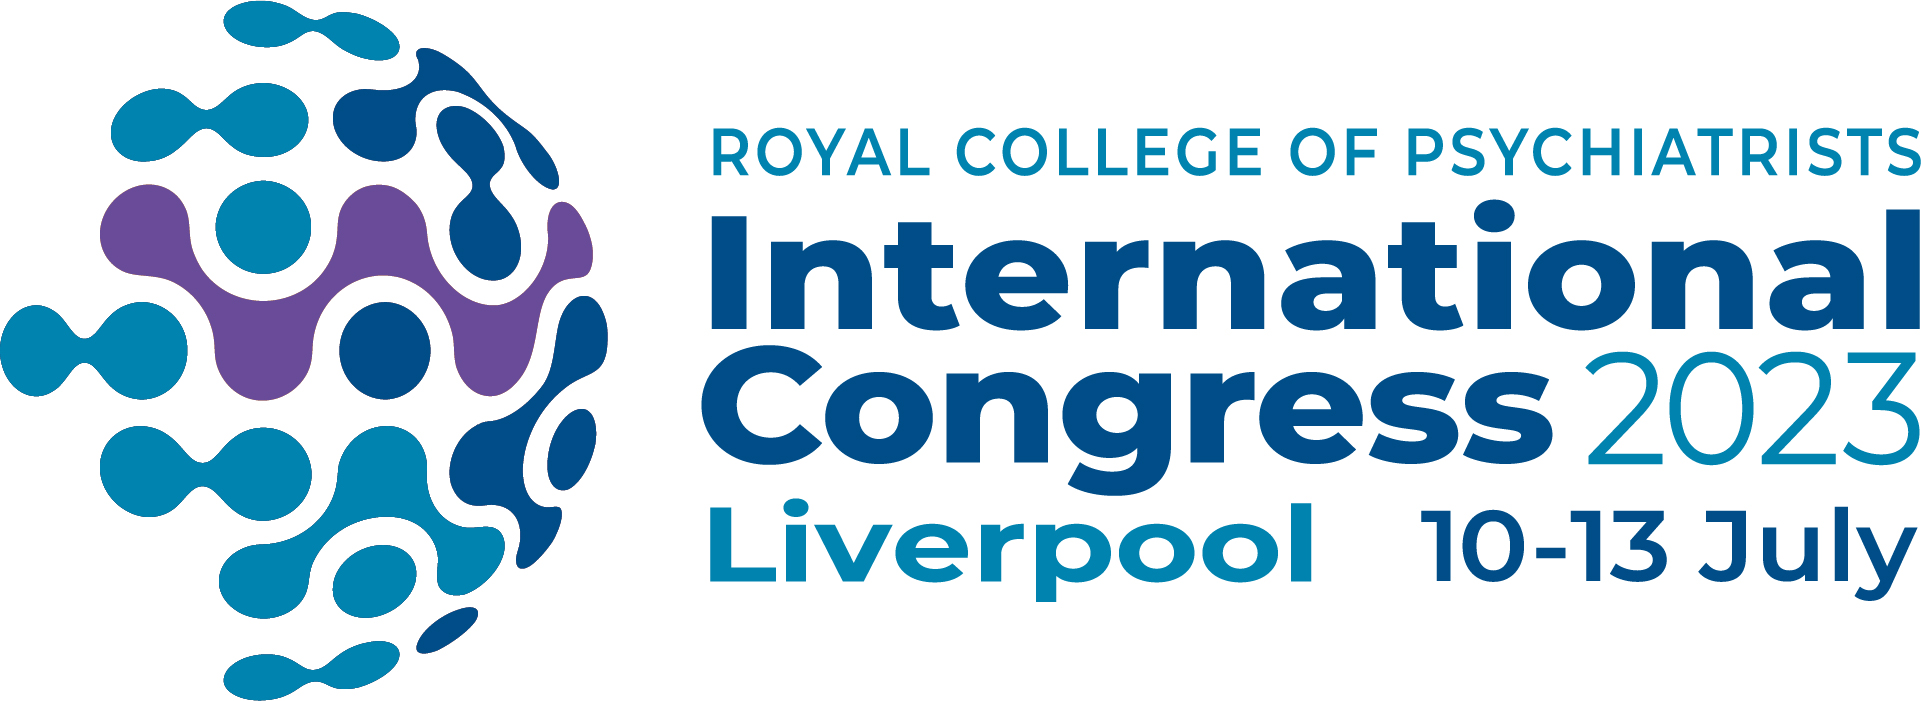 2023 International Congress logo